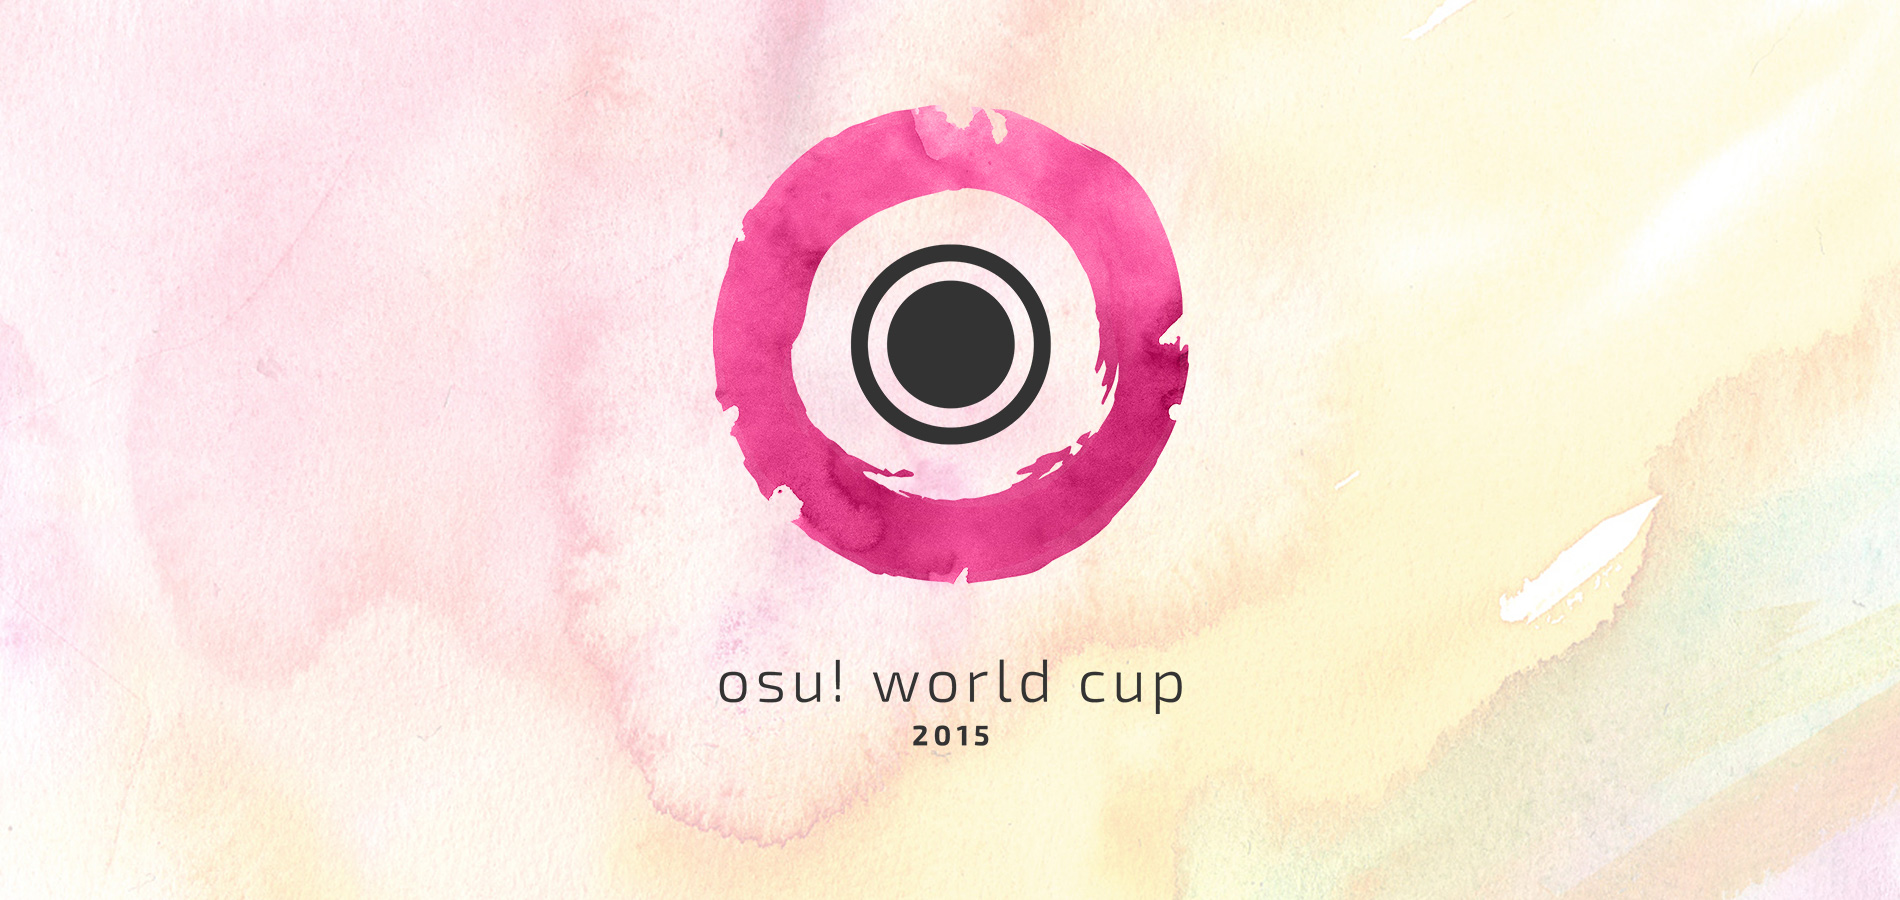 Осу кап. Osu World Cup. Osu Cup 2022. World of osu.